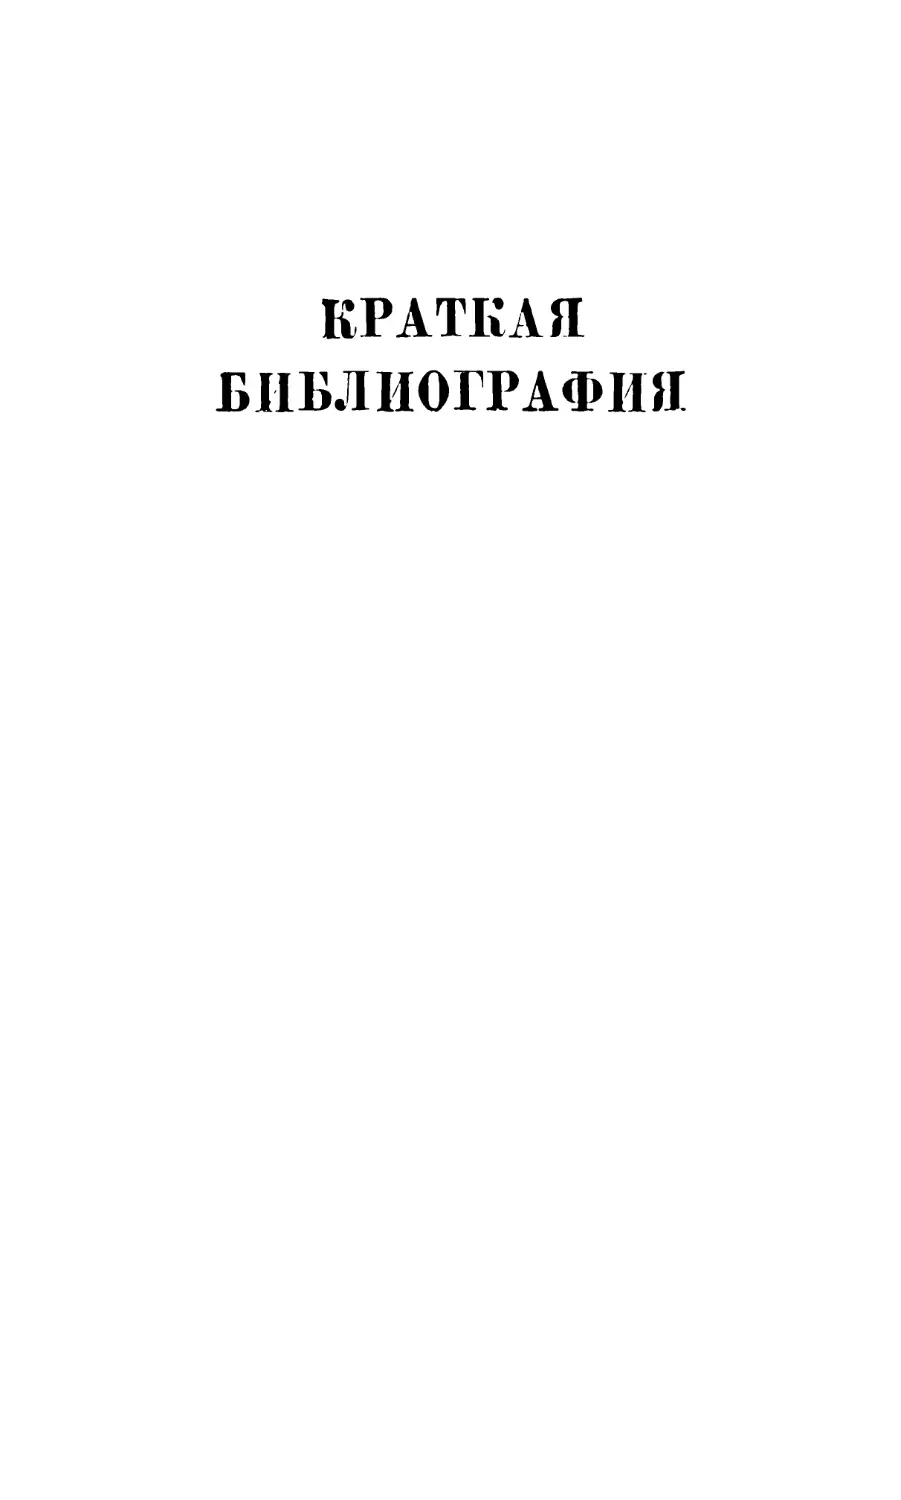 Краткая библиография атеистической литературы, изданной в СССР в 1968 г. Составитель Л. А. Ворожцова